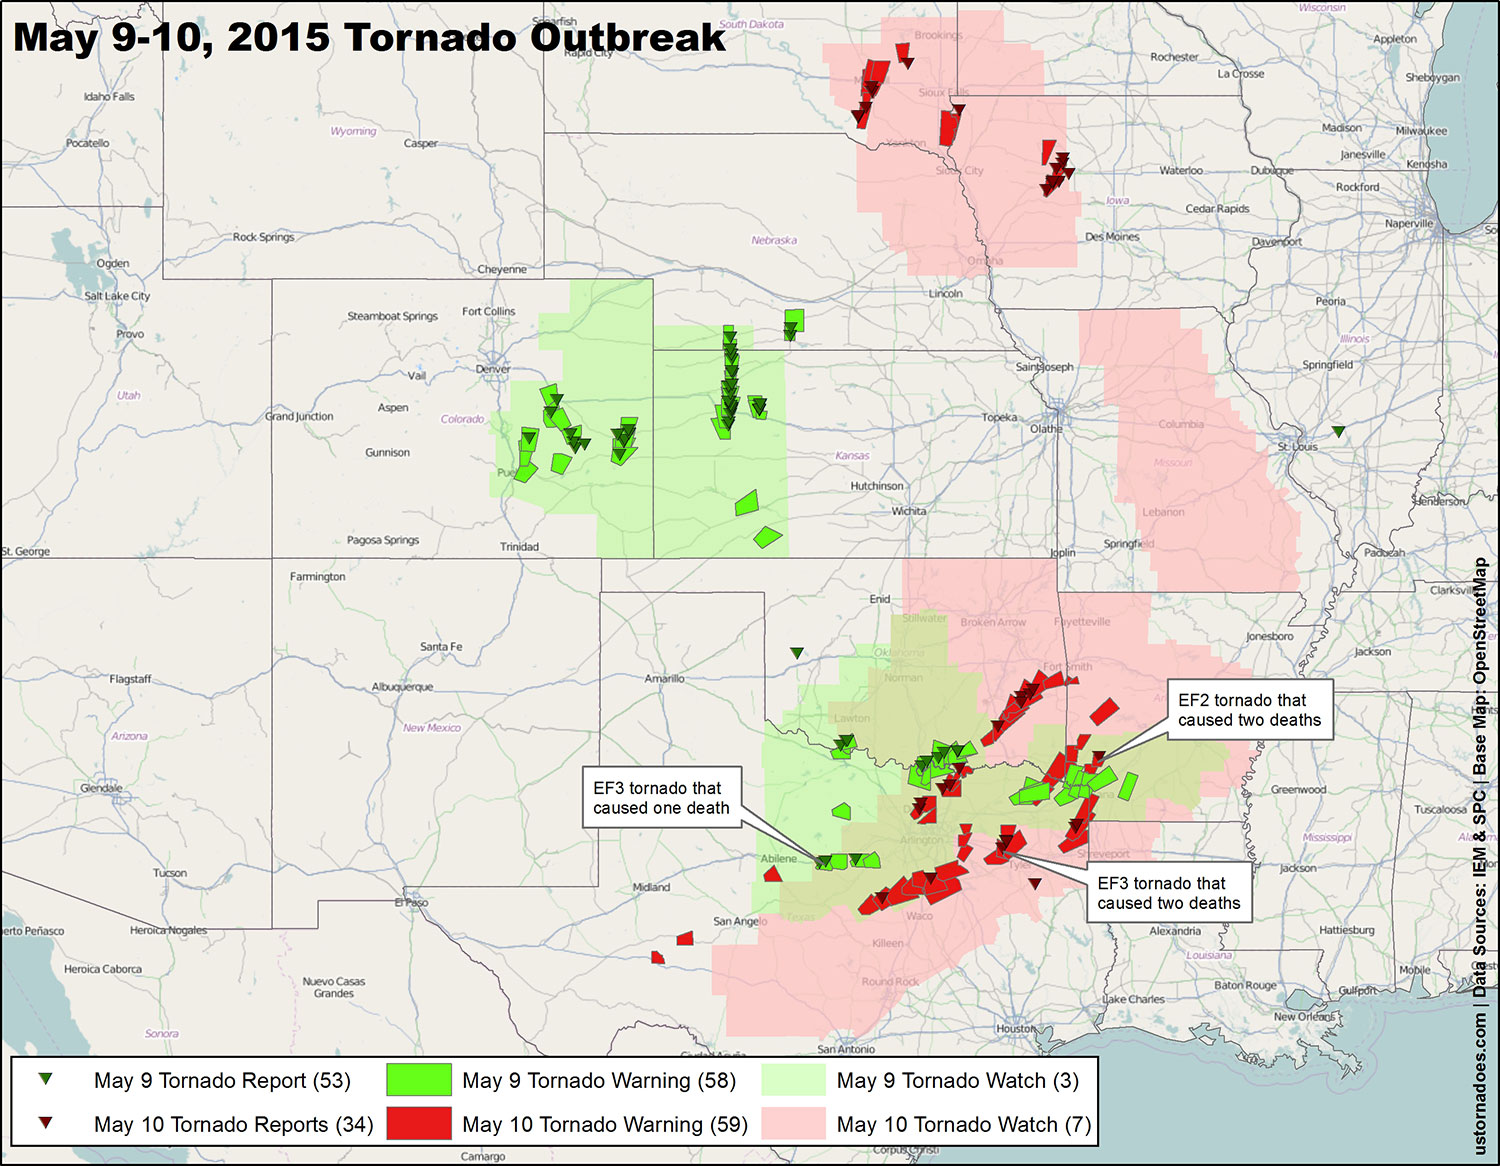 The largest tornado outbreaks of 2015 - U.S. Tornadoes